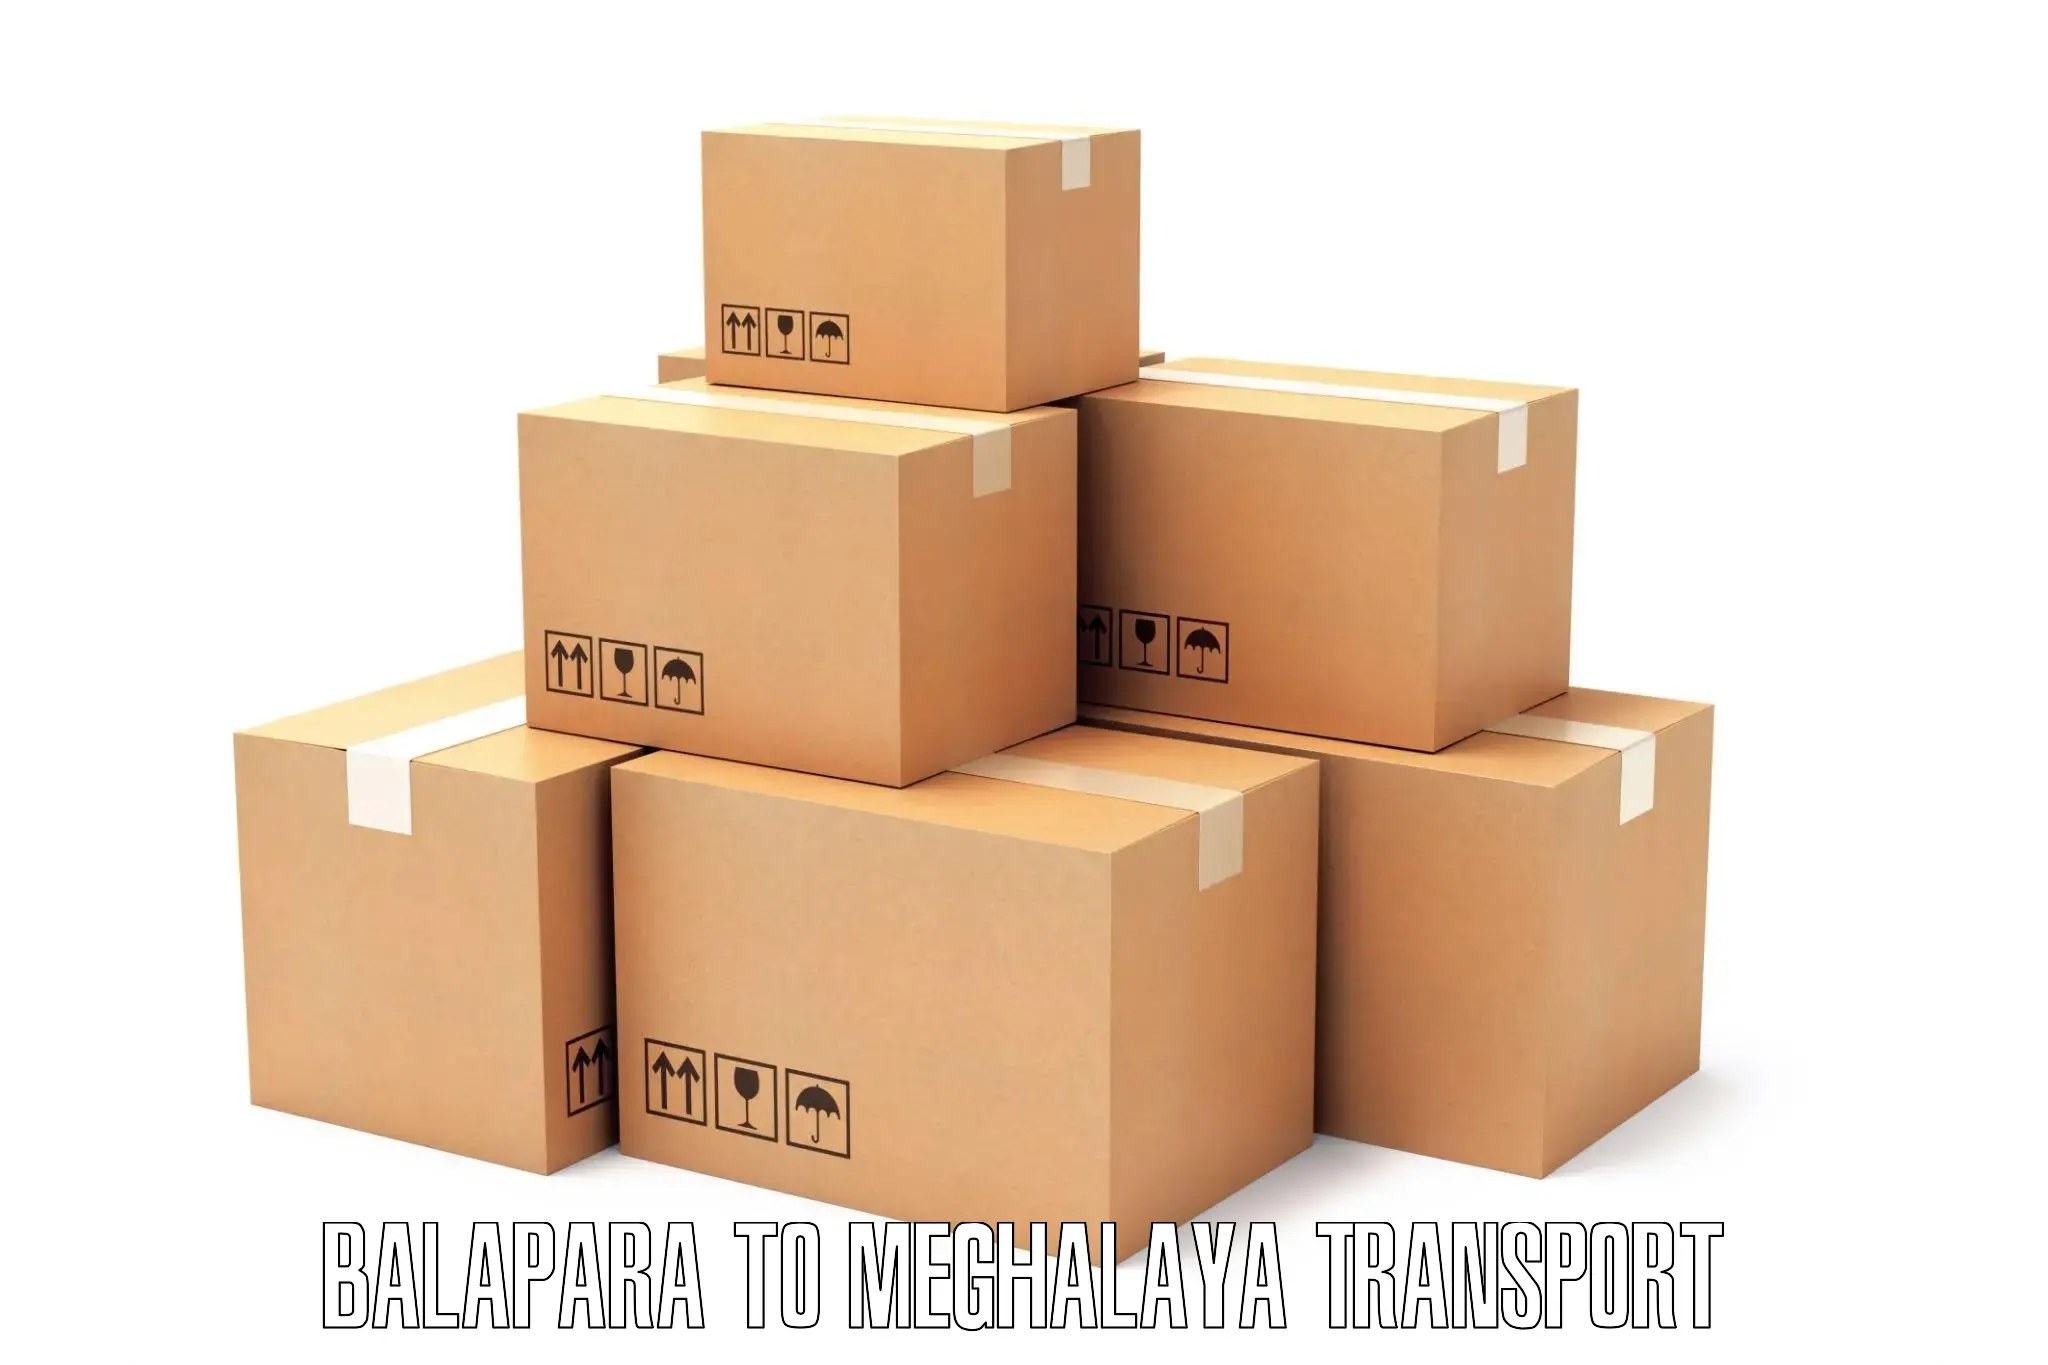 Interstate goods transport Balapara to Mairang